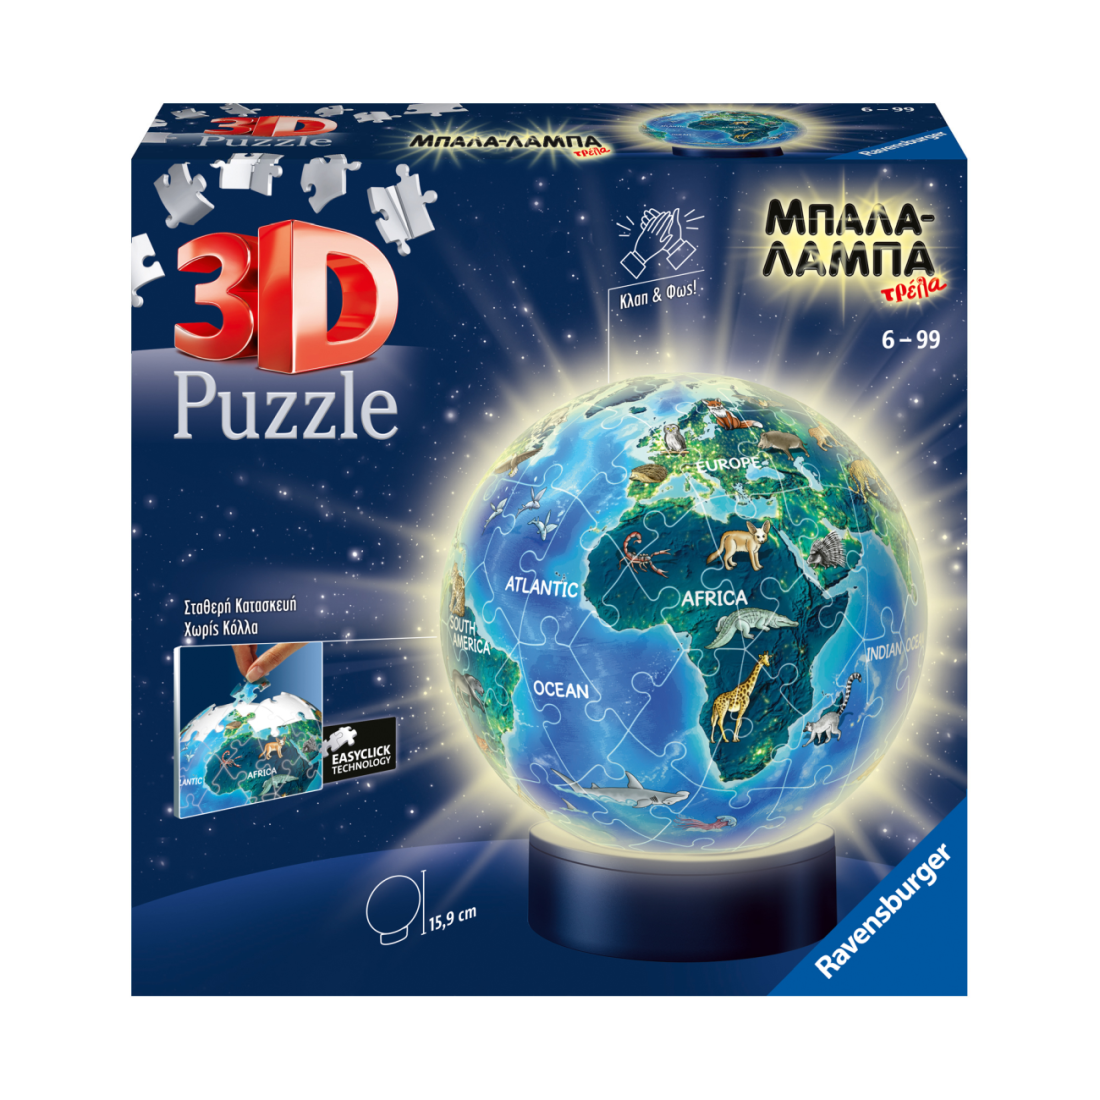 Puzzle 3D - Μπάλα Λάμπα Υδρόγειος